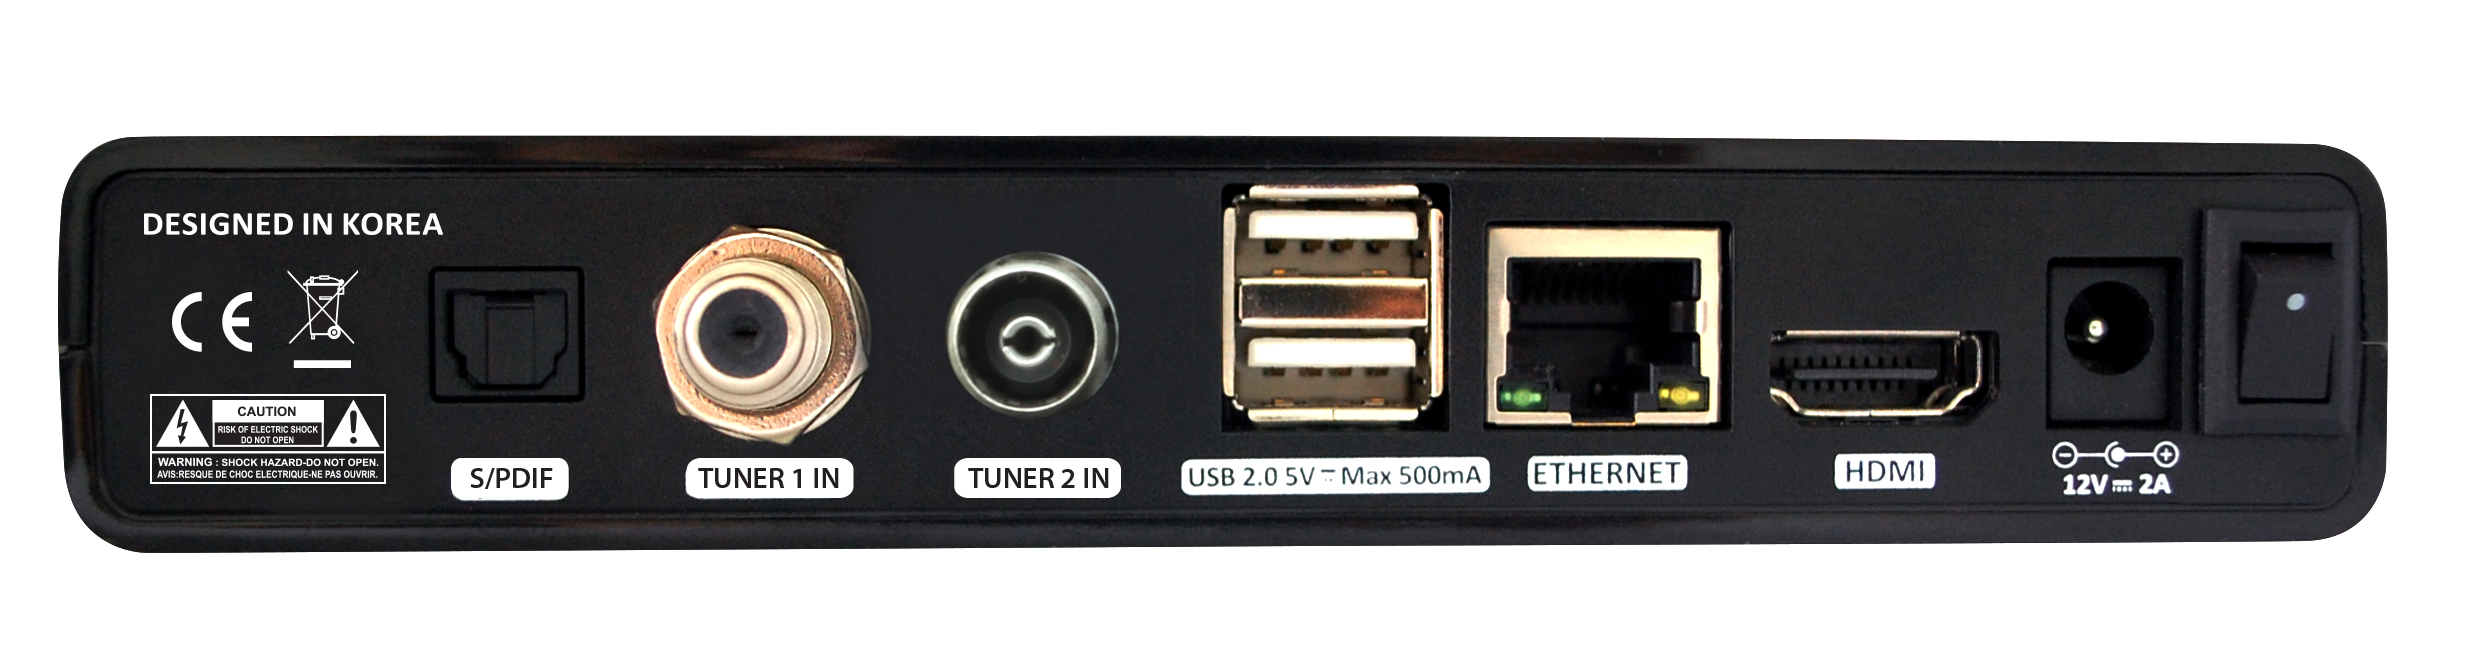 Lunix 4K TV Boks til kabel TV DVB-C, Antenne TV DVB-T/DVB-T2 og parabol TV DVB-S/S2/S2X